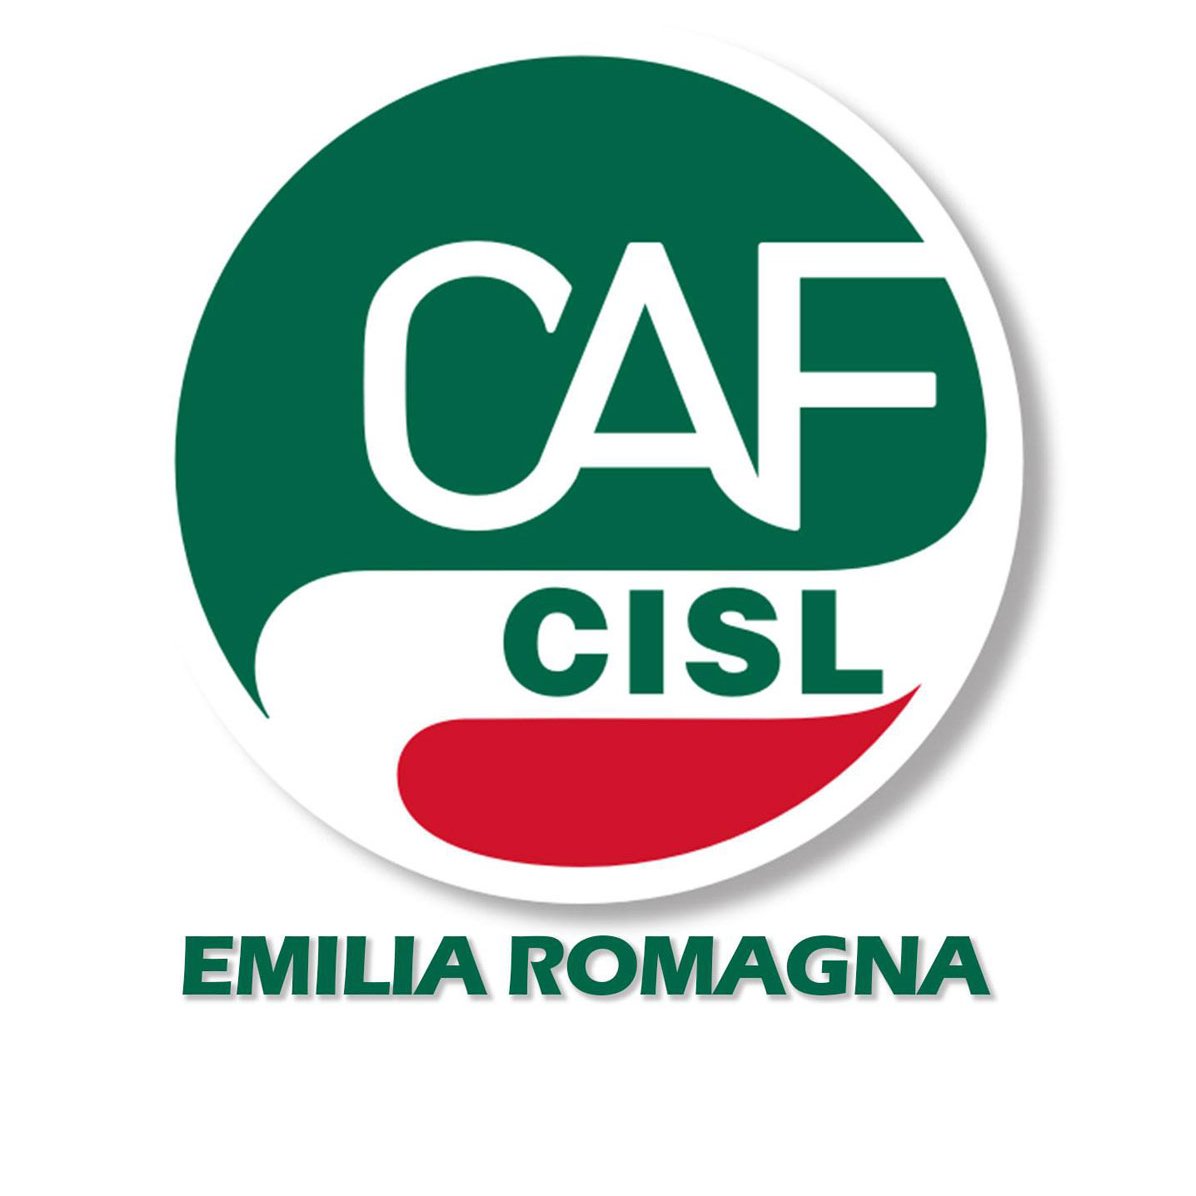 Caf Cisl Emilia Romagna